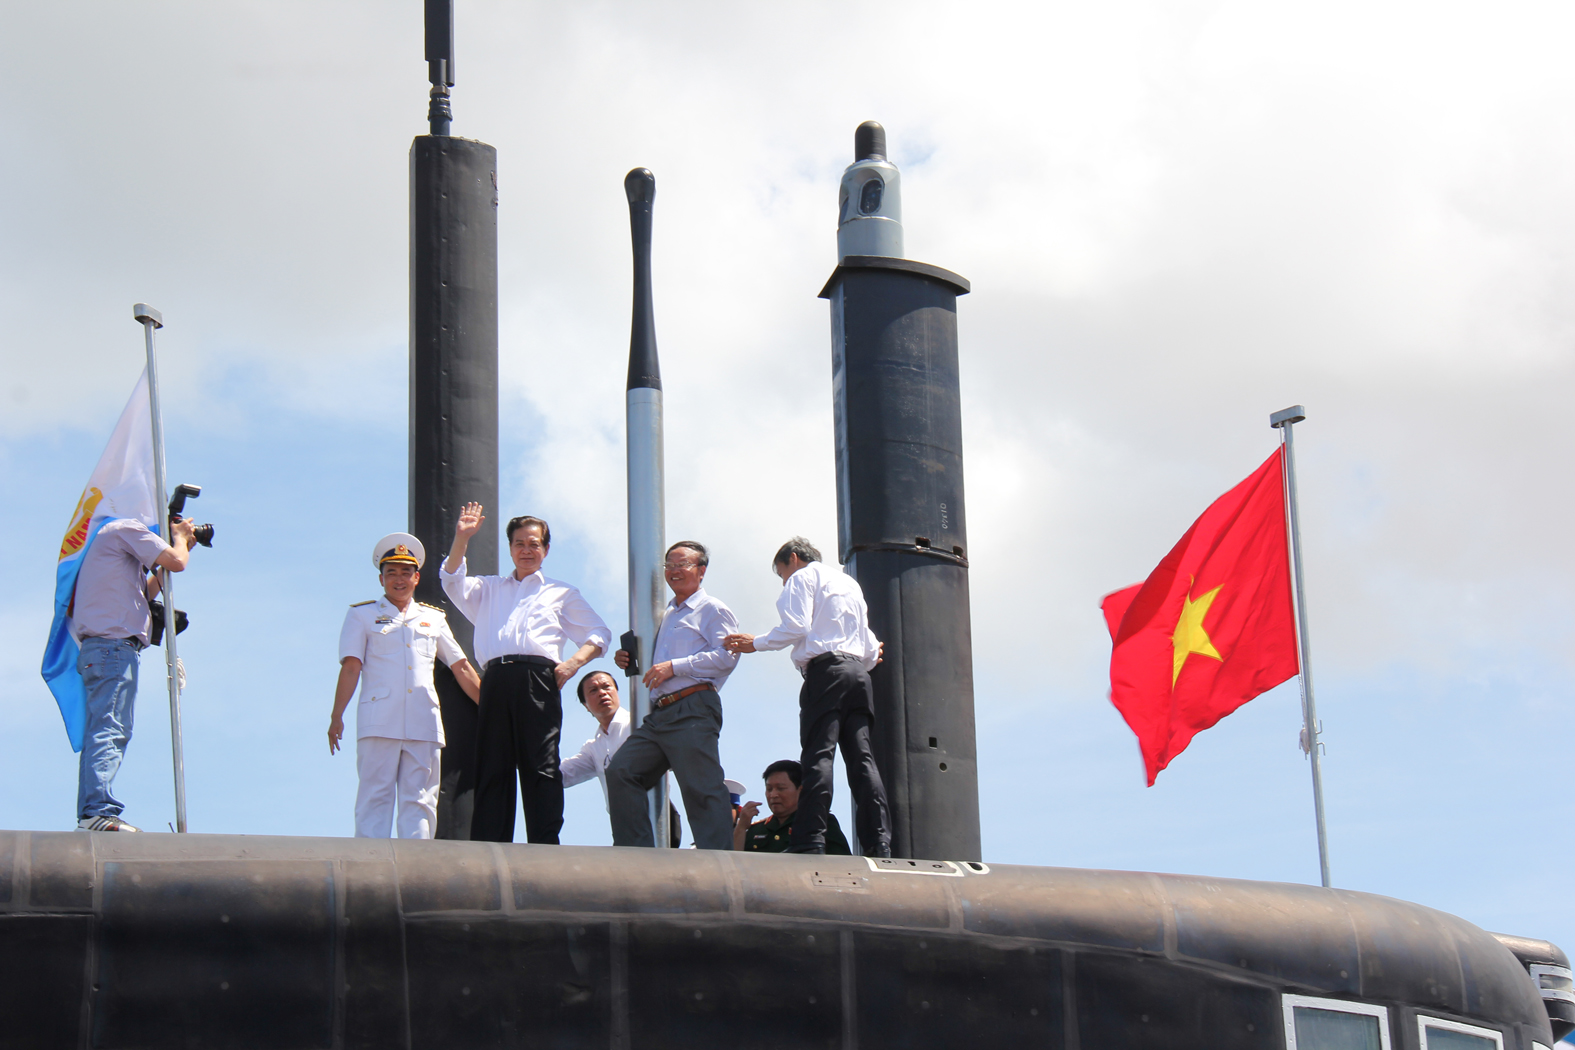 Năm 2024, Tàu ngầm Kilo 636 là một trong những biểu tượng tinh thần của Hải quân Việt Nam. Với công nghệ hiện đại, tàu ngầm Kilo 636 trở thành tay đua vượt trội trong cuộc đua với các đối thủ ngoại quốc. Cùng chiêm ngưỡng hình ảnh tàu ngầm Kilo 636, với thiết kế đẹp mắt và cơ chế hoạt động đầy ngạc nhiên.